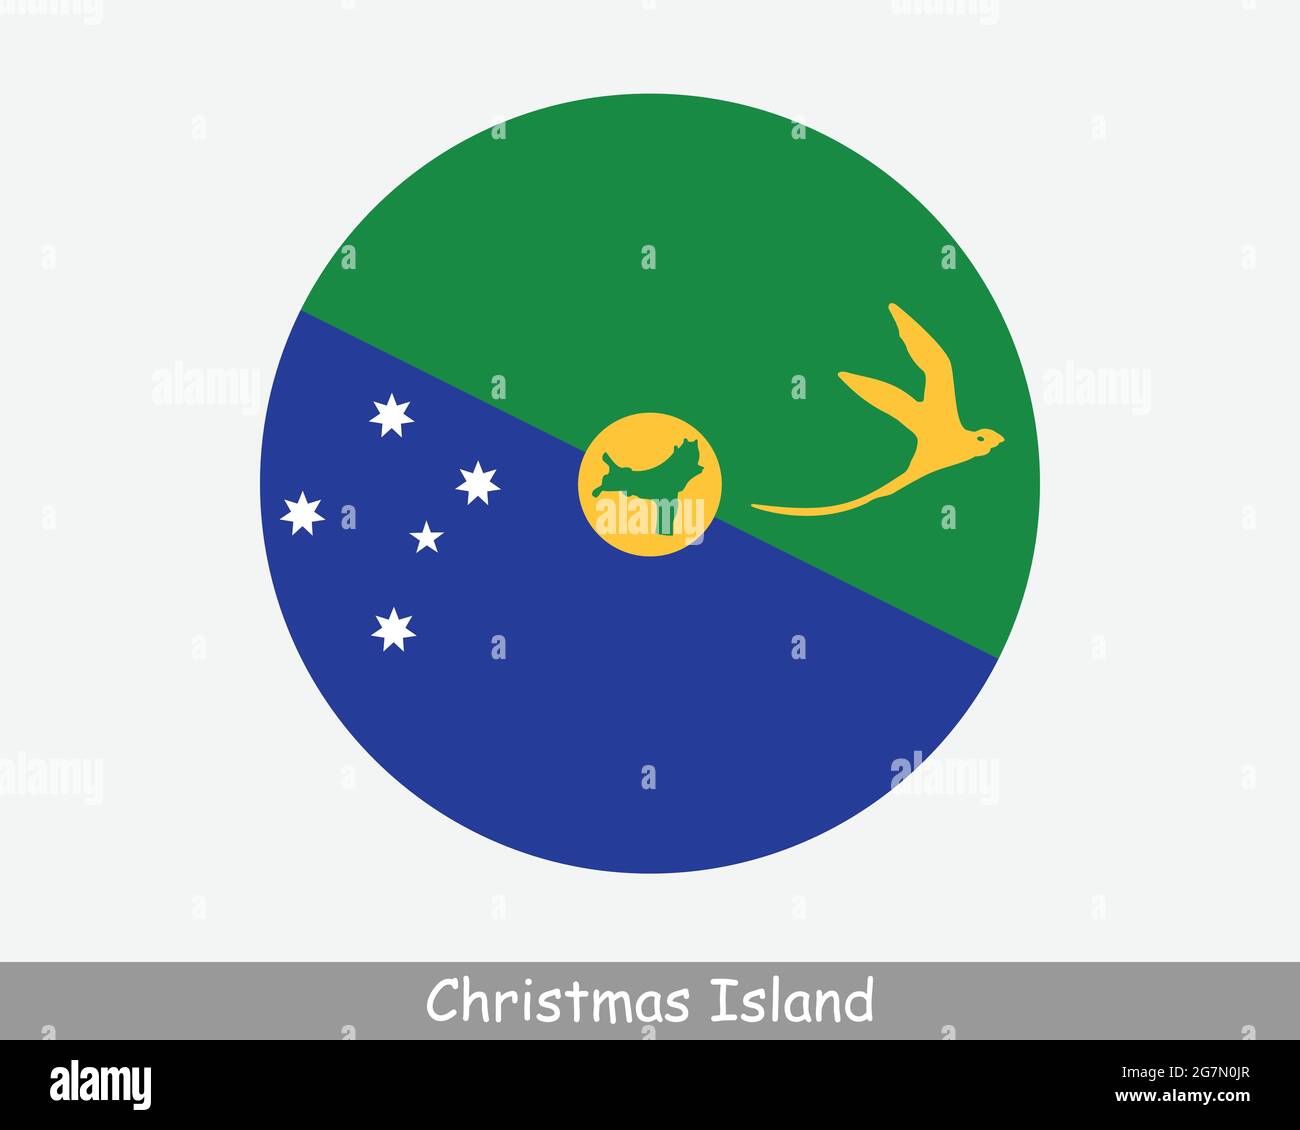 Drapeau circulaire de l'île Christmas. Territoire australien de l'océan Indien. Territoire externe de l'Australie. Icône de bannière de bouton circulaire. Vecteur EPS Illustration de Vecteur